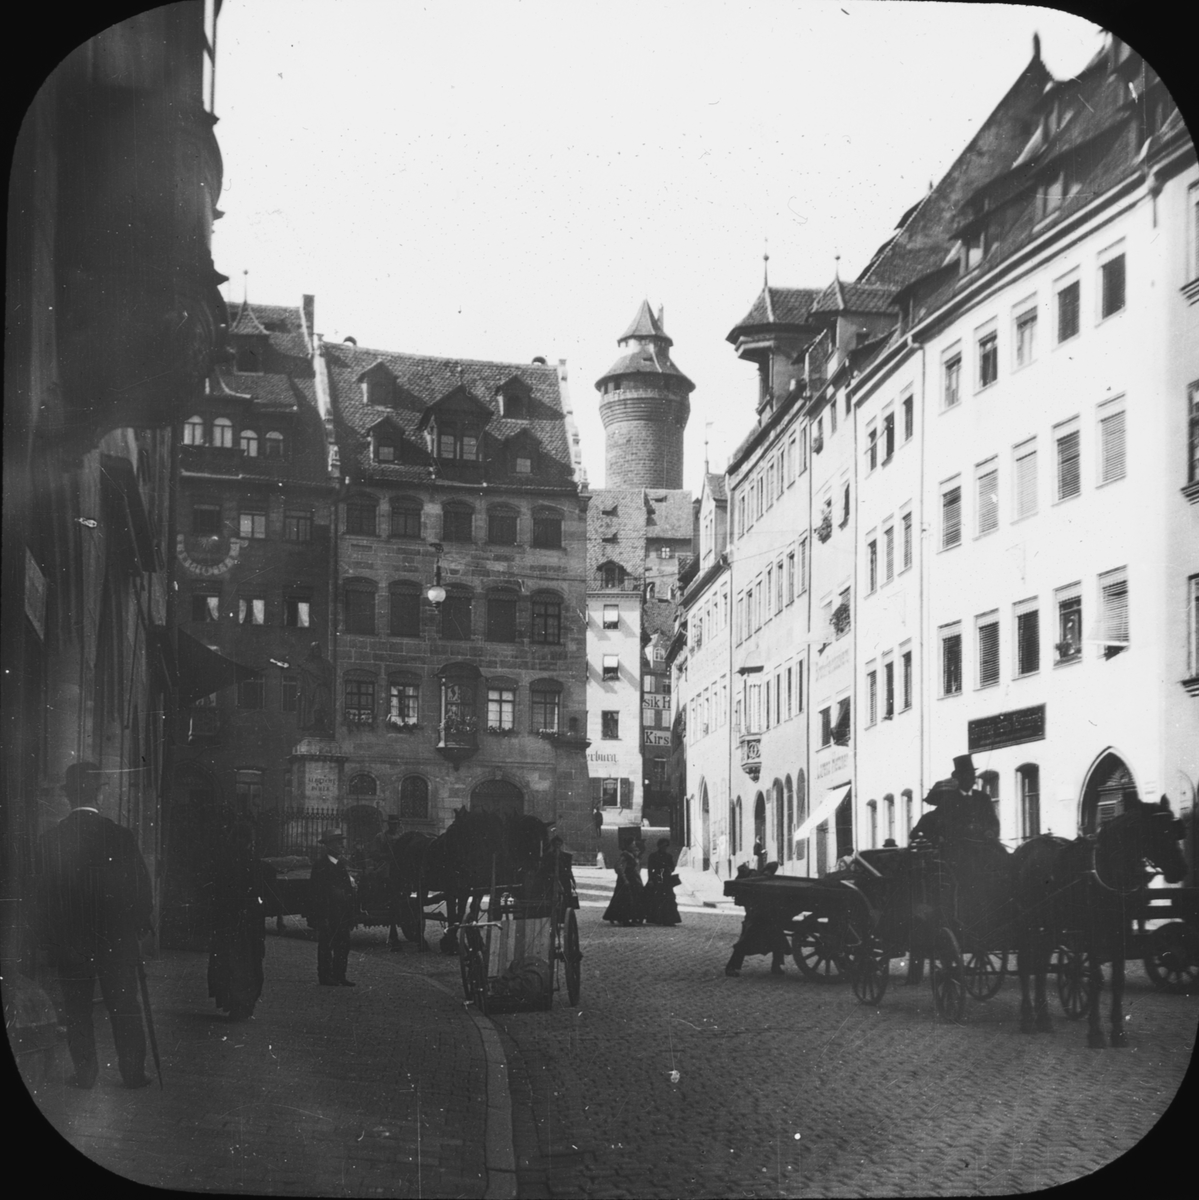 Skioptikonbild med motiv från gata i Nürnberg.
Bilden har förvarats i kartong märkt: Vårresan 1910 Nürnberg 9. XV.